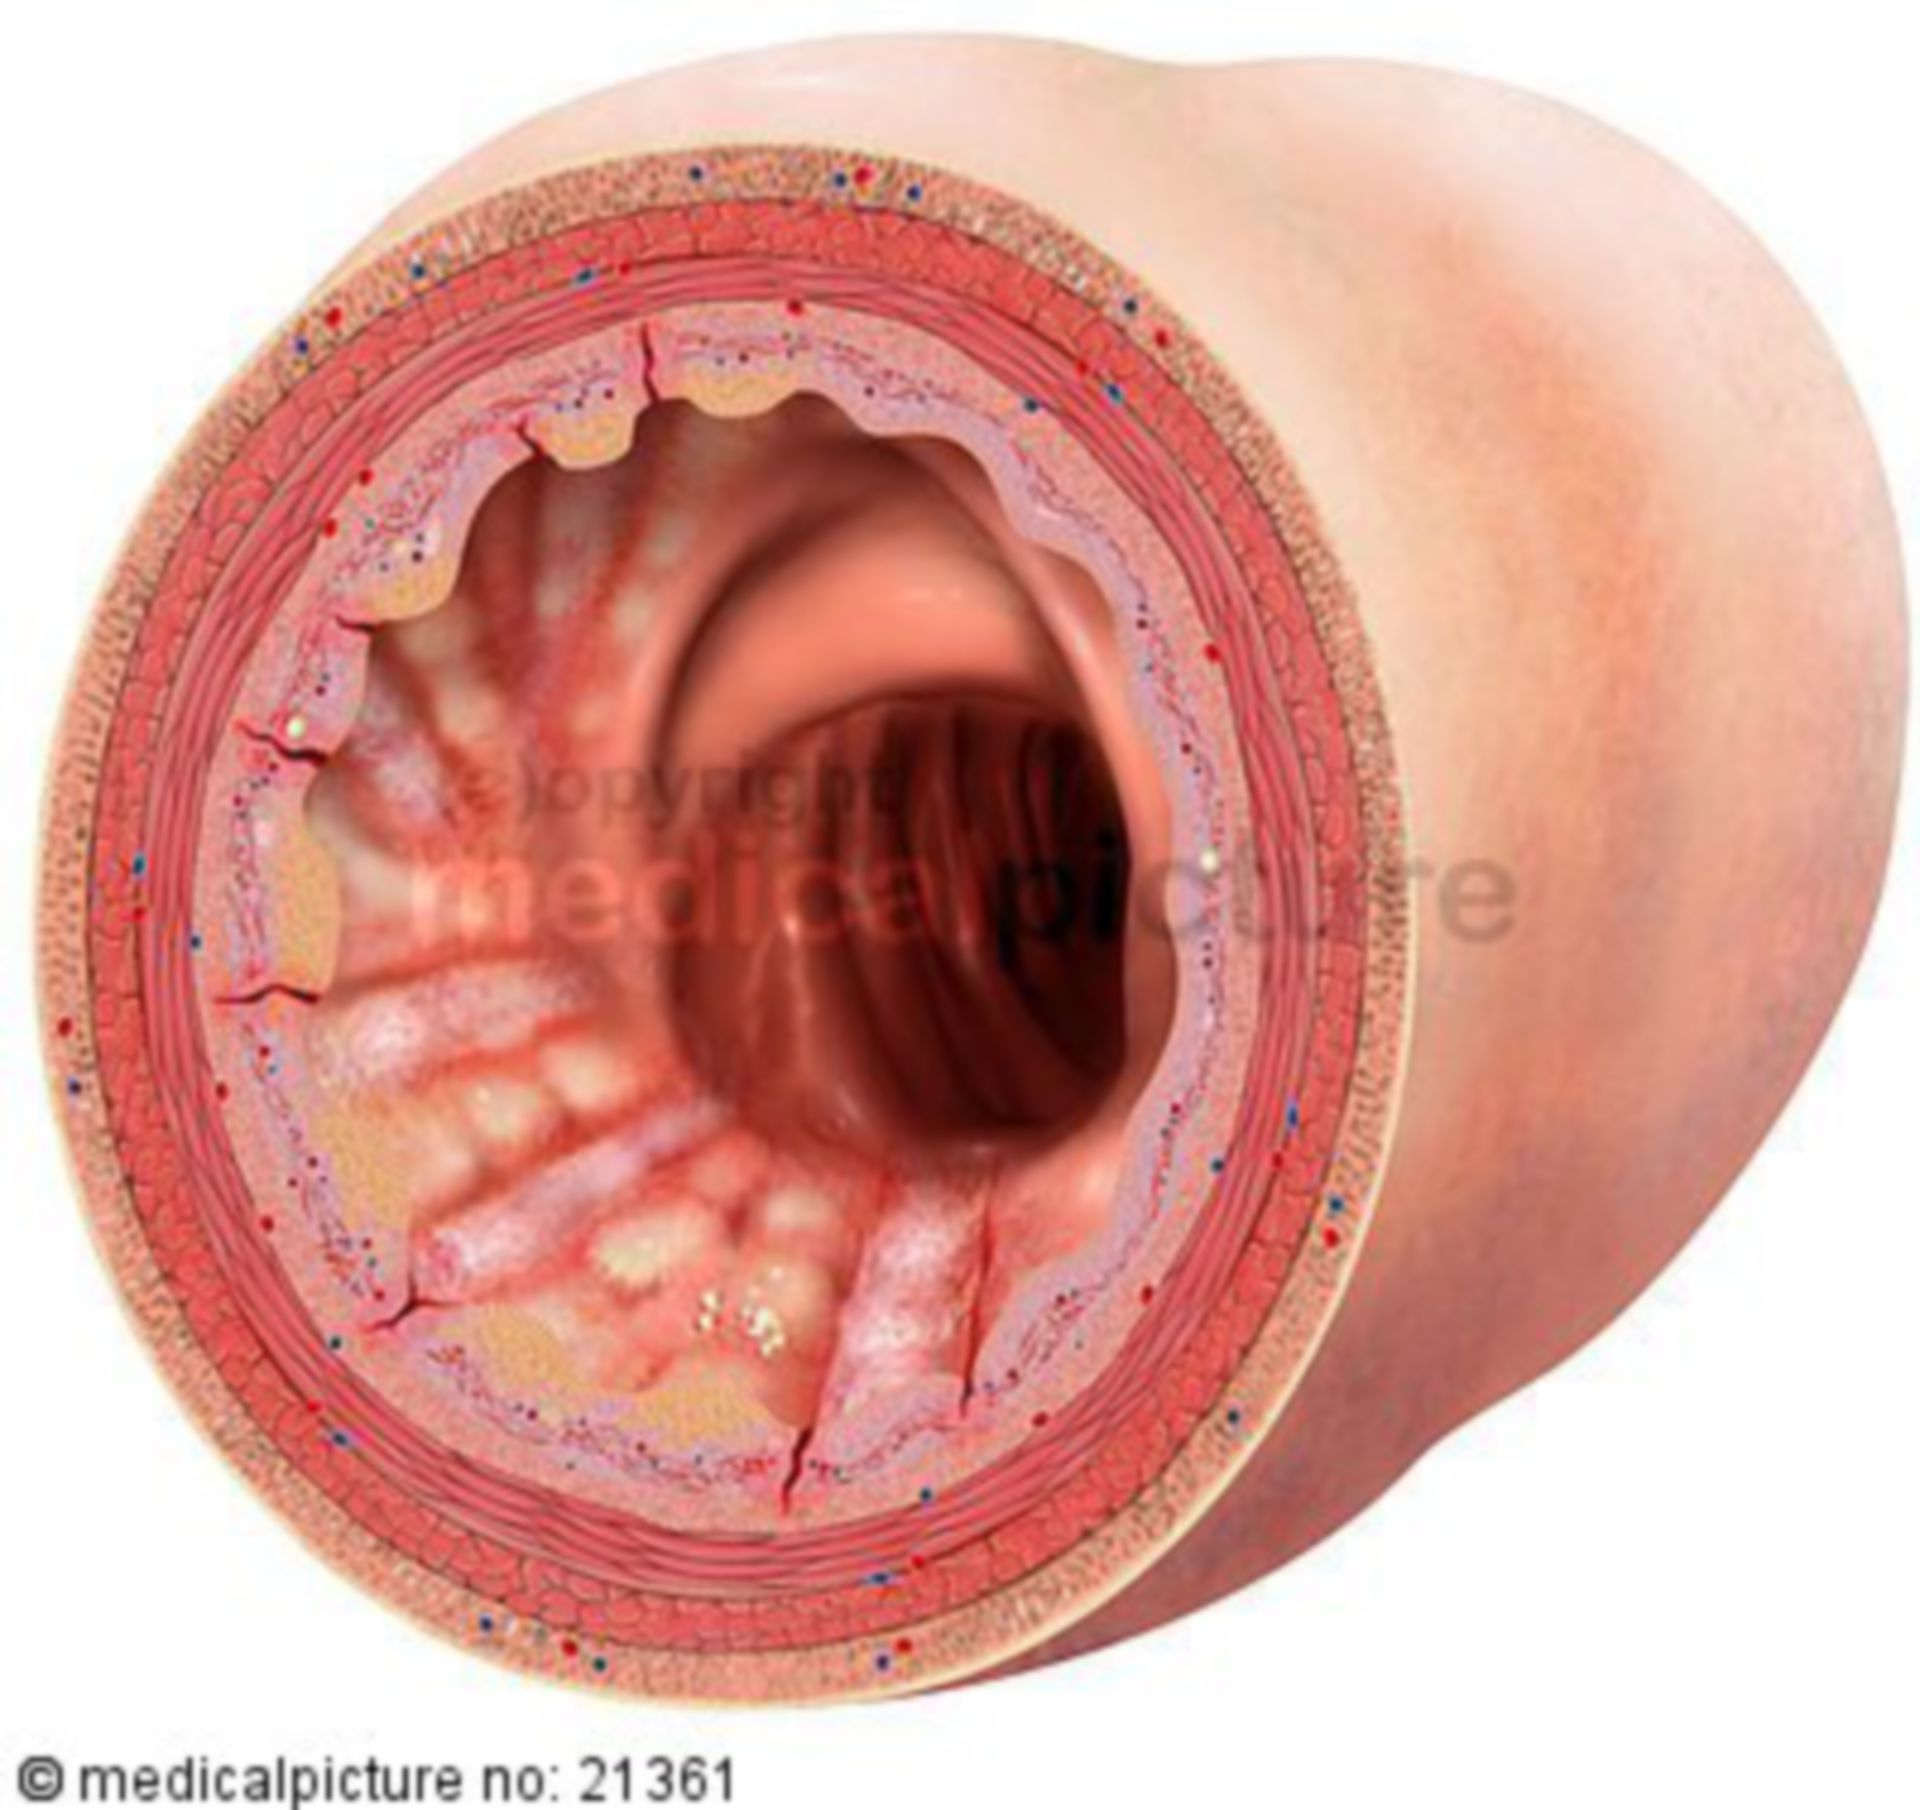 Lumen of a colon with Morbus Crohn